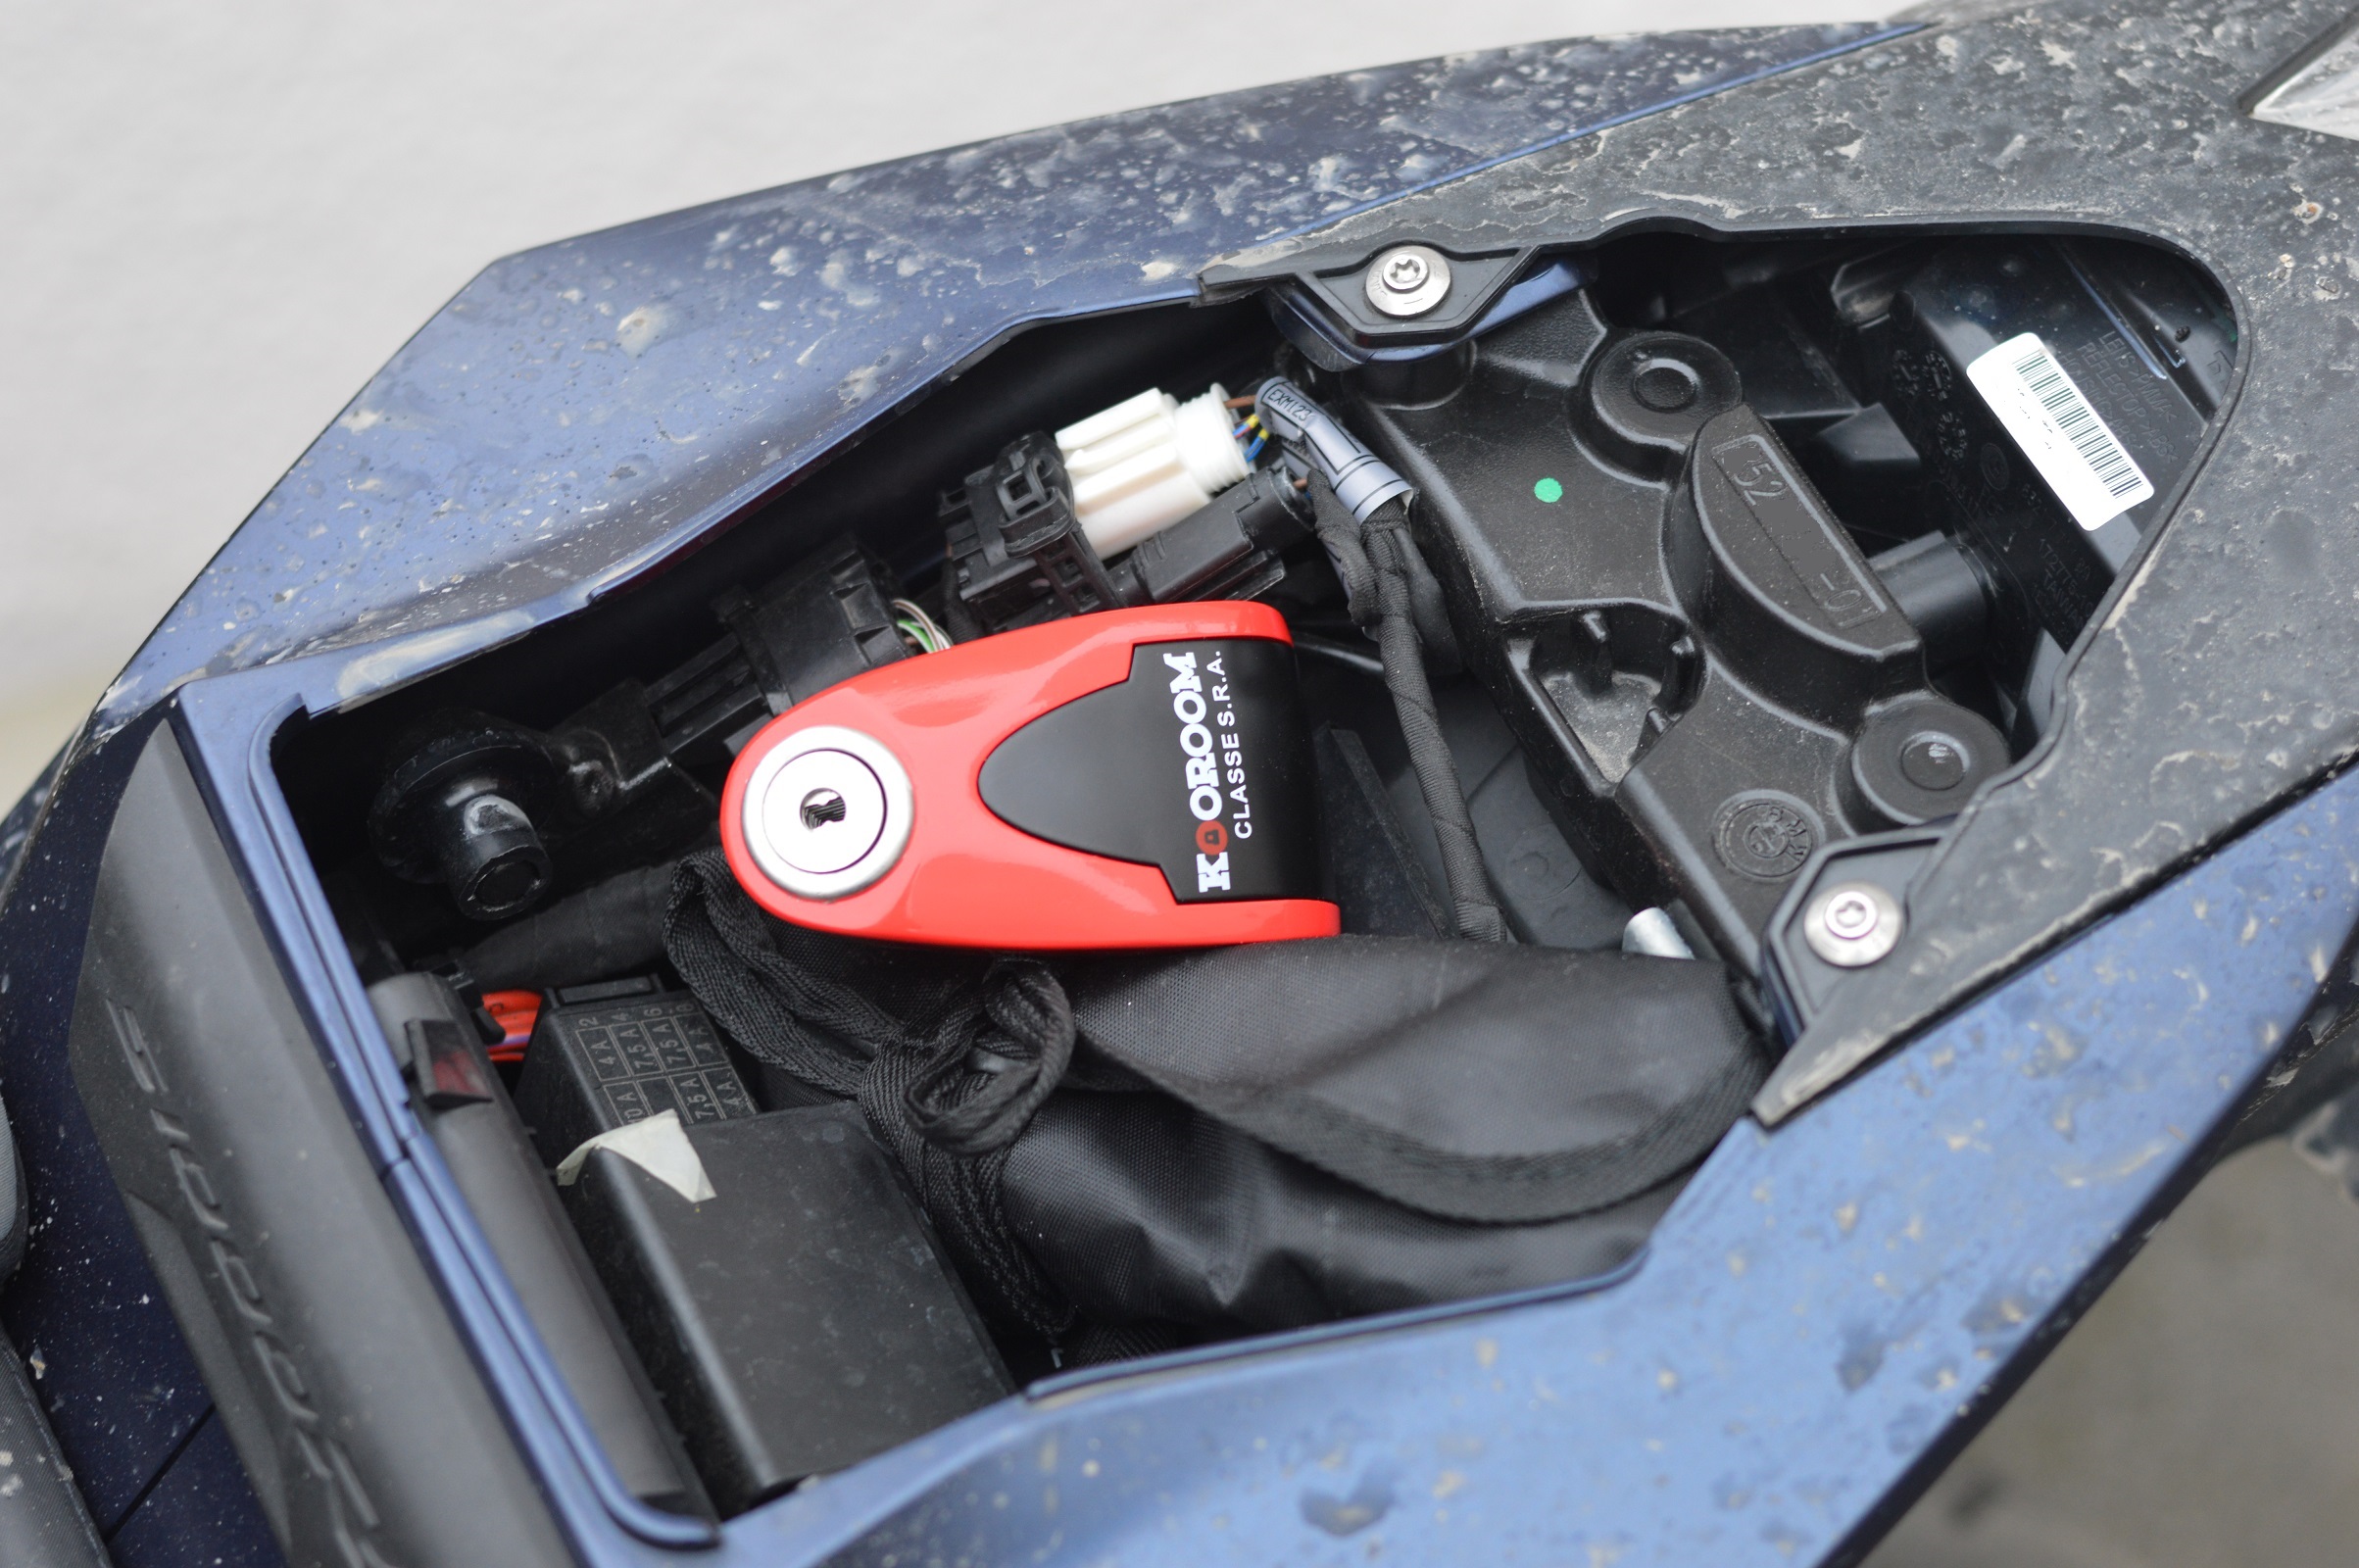 Antivol Kooroom Protect Disc Alarm SRA dans un coffre de moto